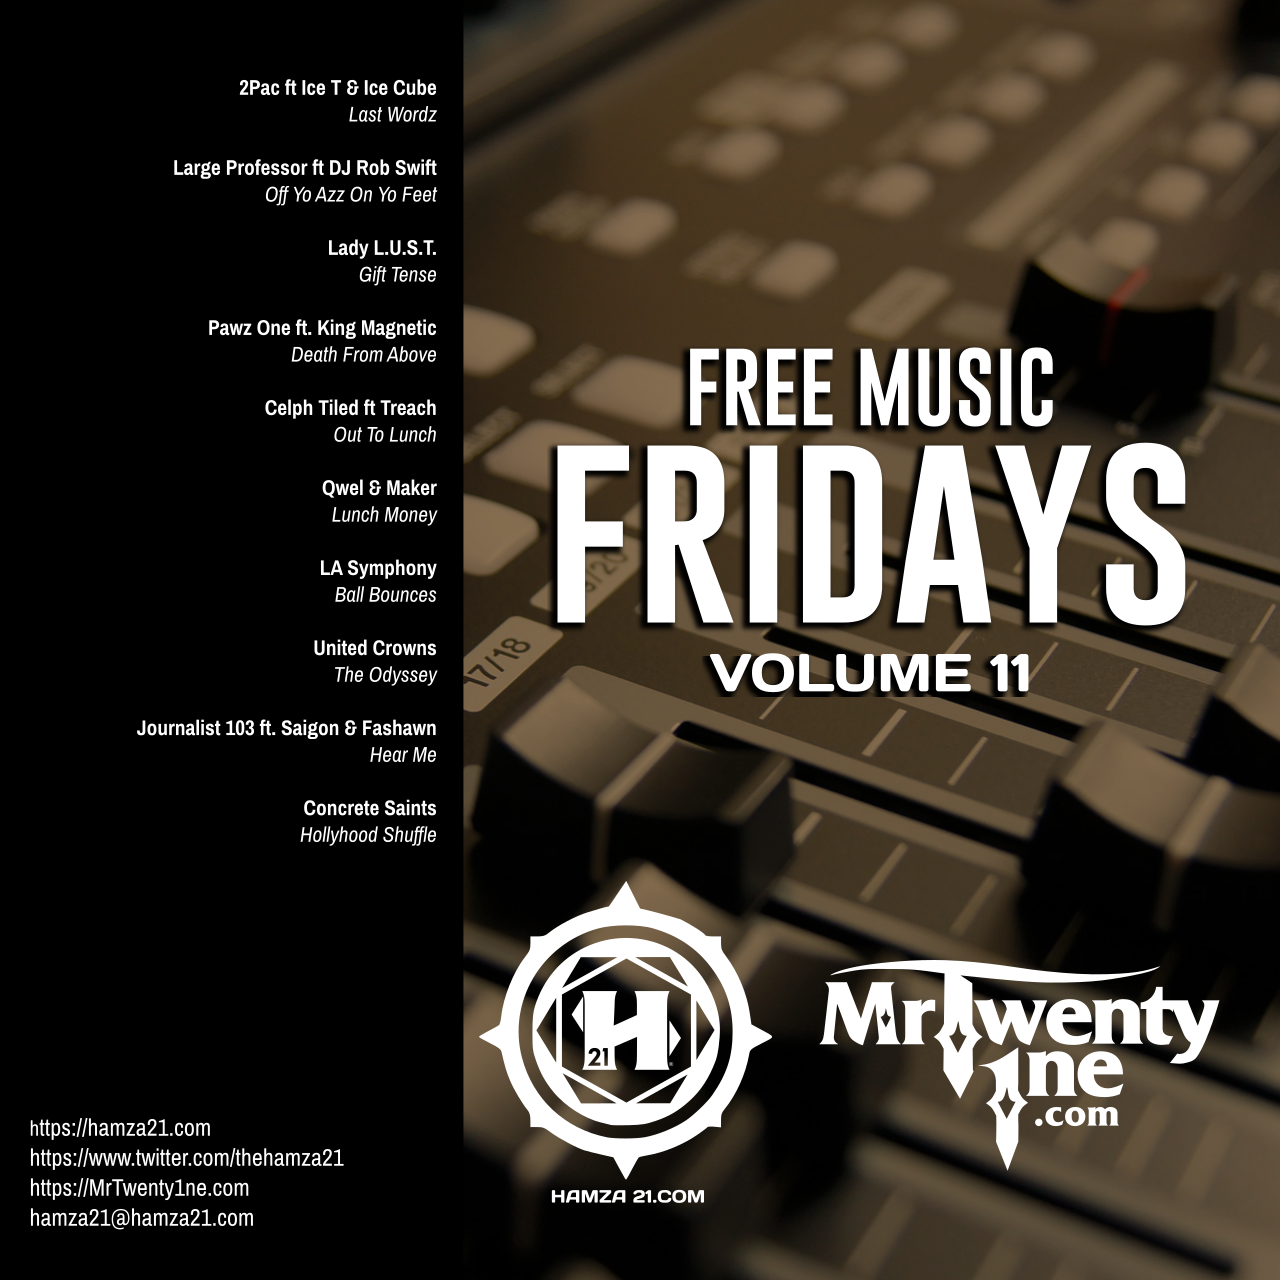 FreeMusicFridays Volume 11